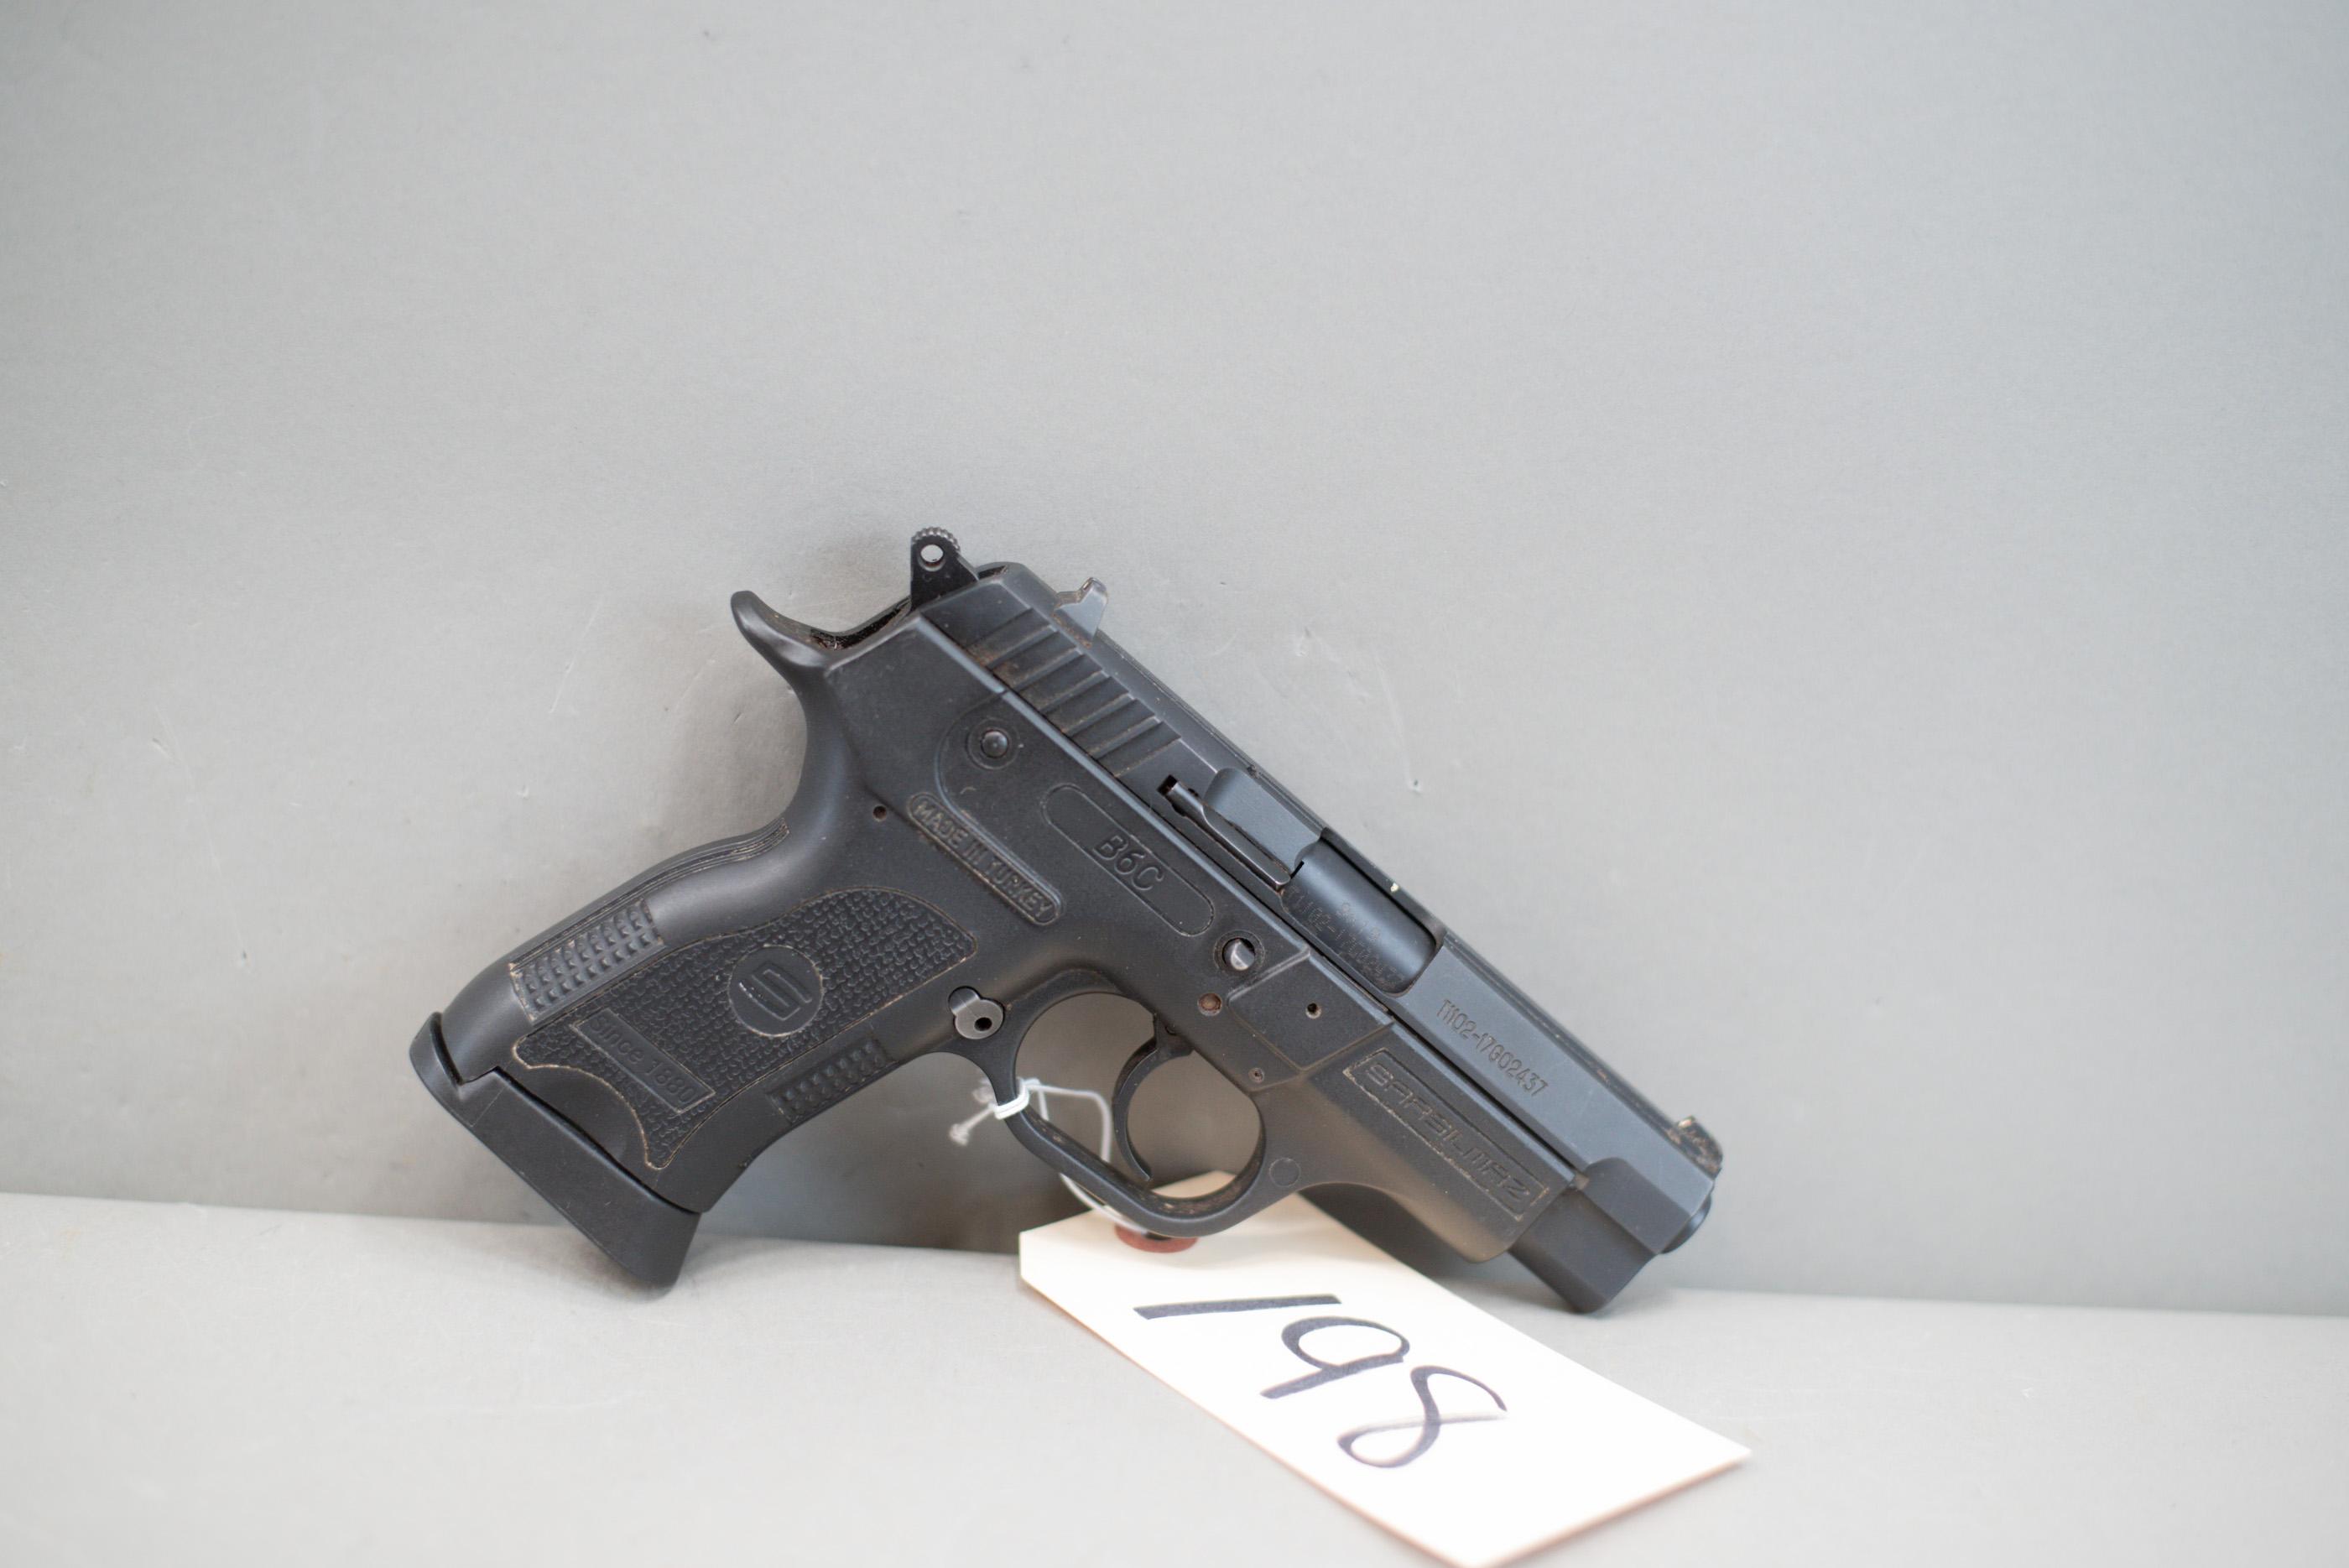 (R) Sarsilmaz Model B6C 9mm Pistol